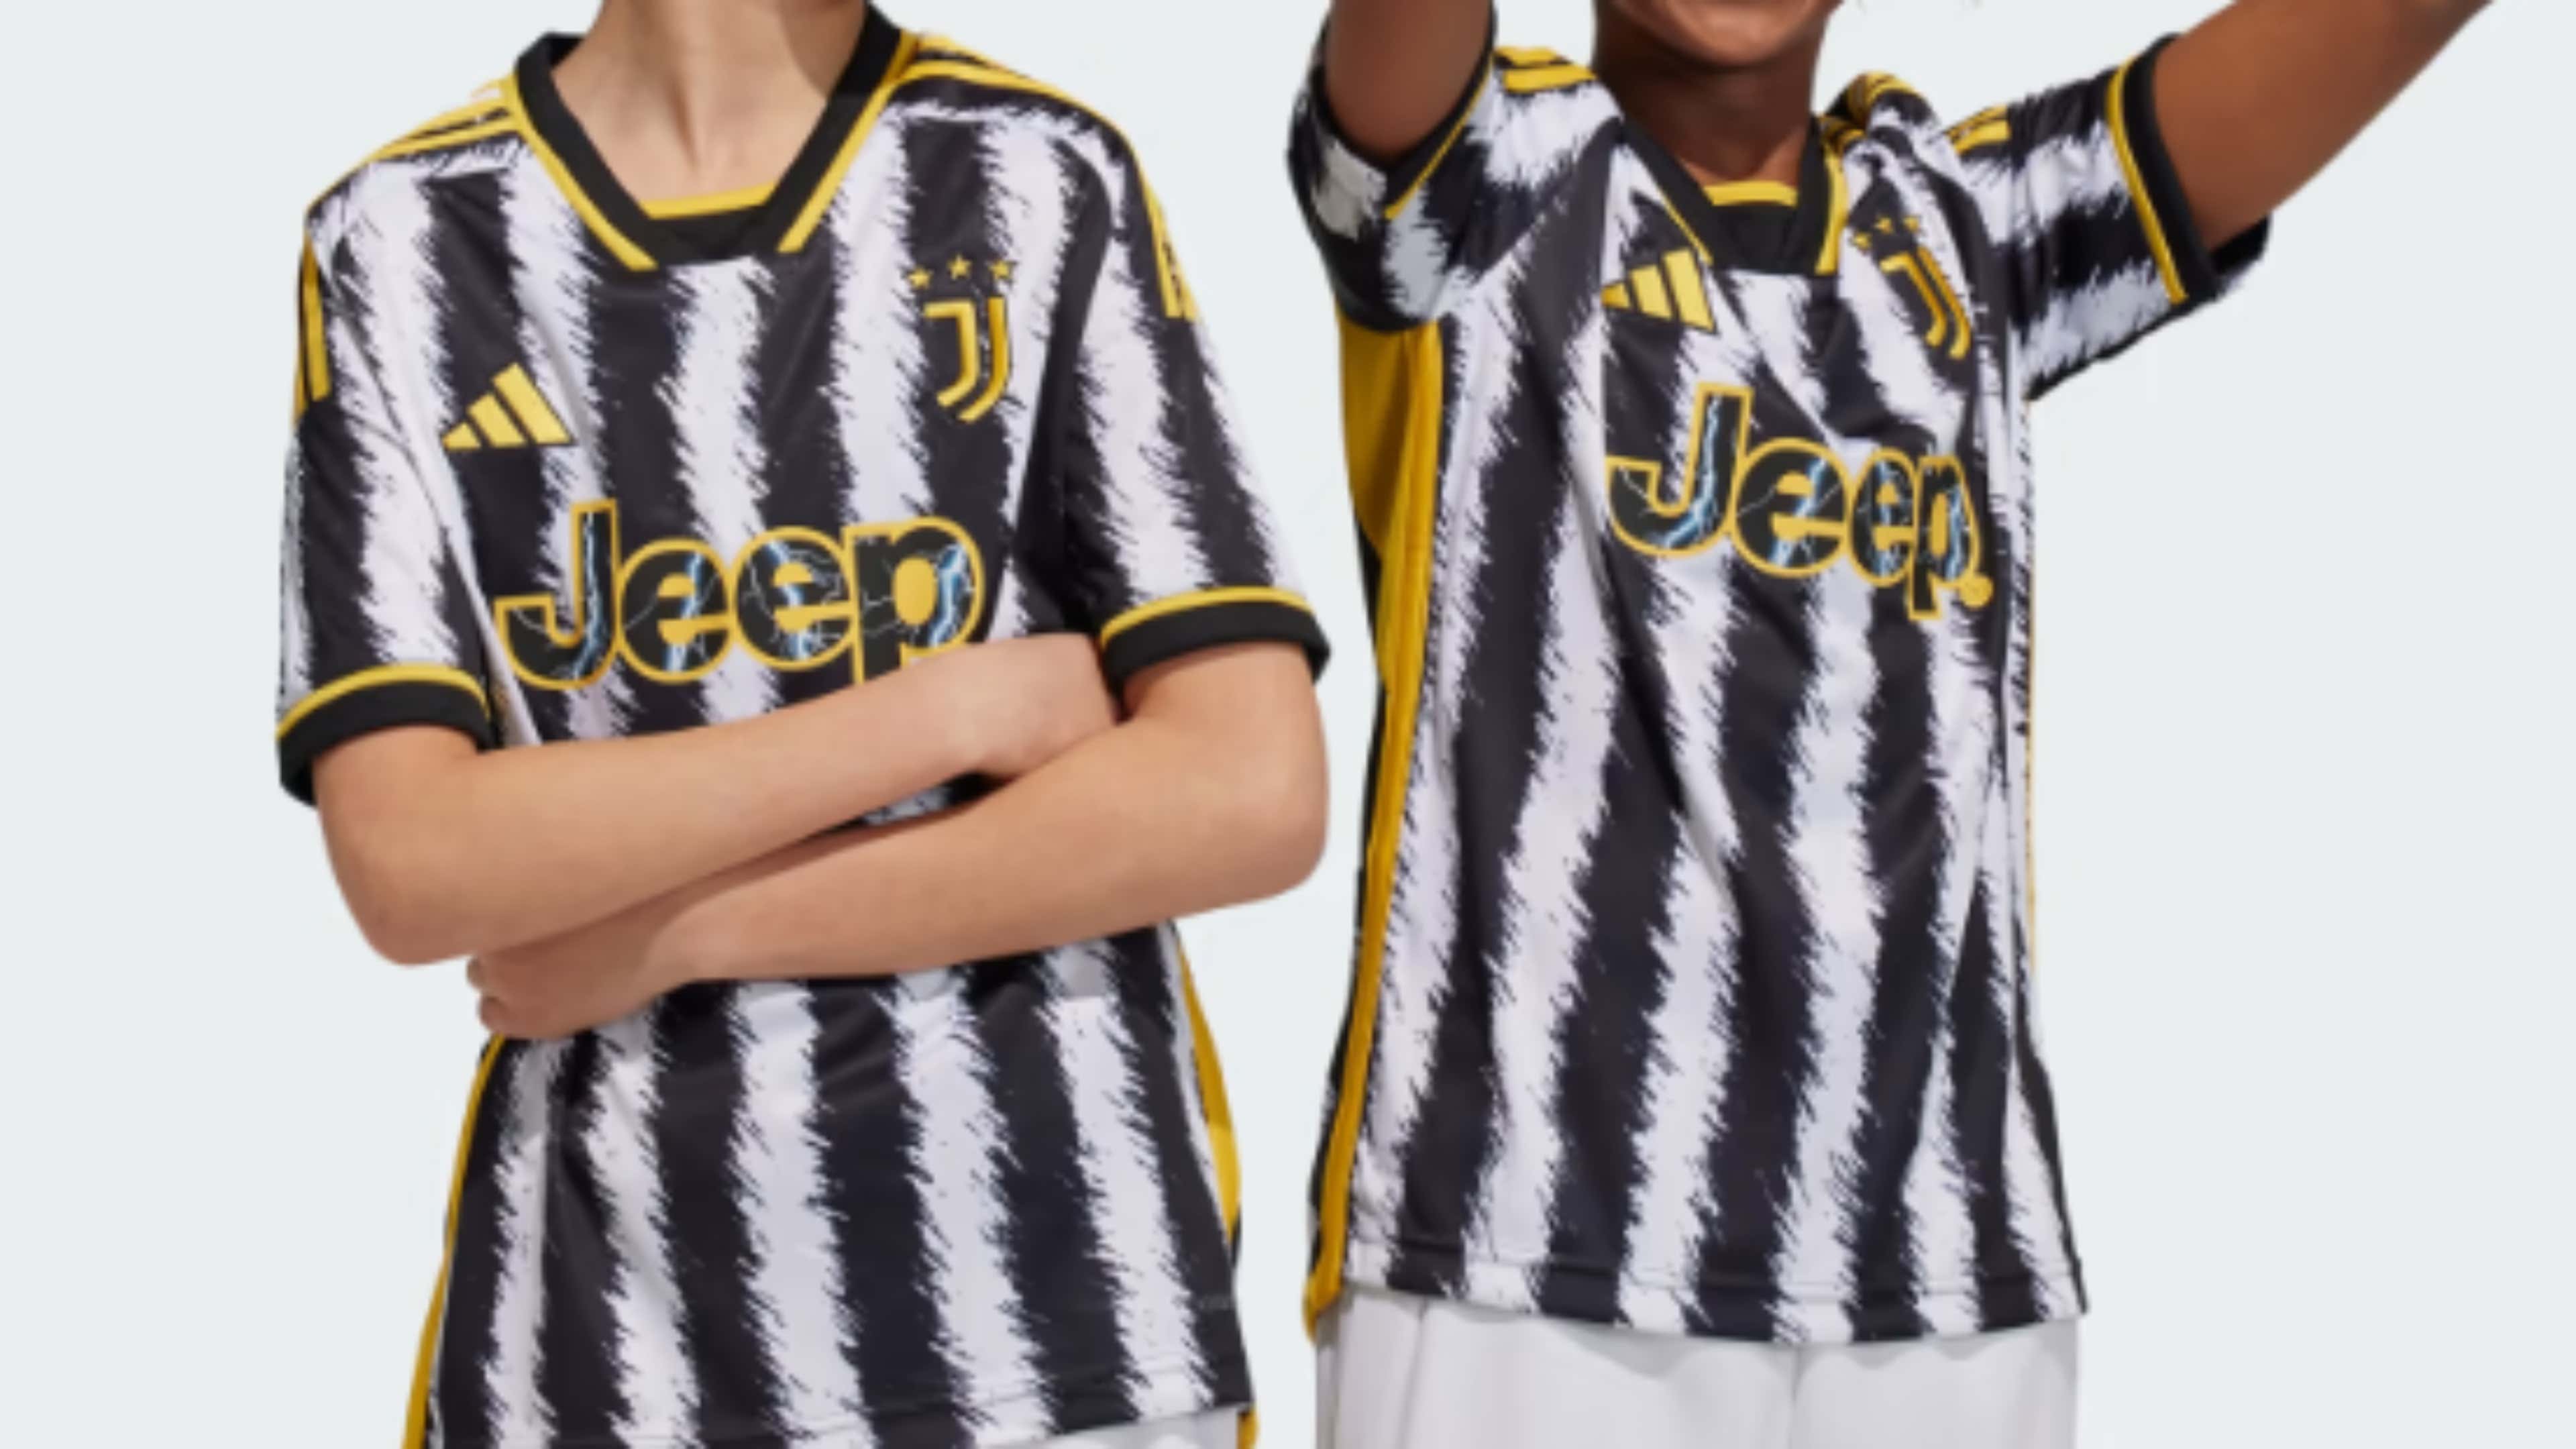 Maglia Juventus 2023/24: prezzo per bambino, uomo e donna. Come acquistarla